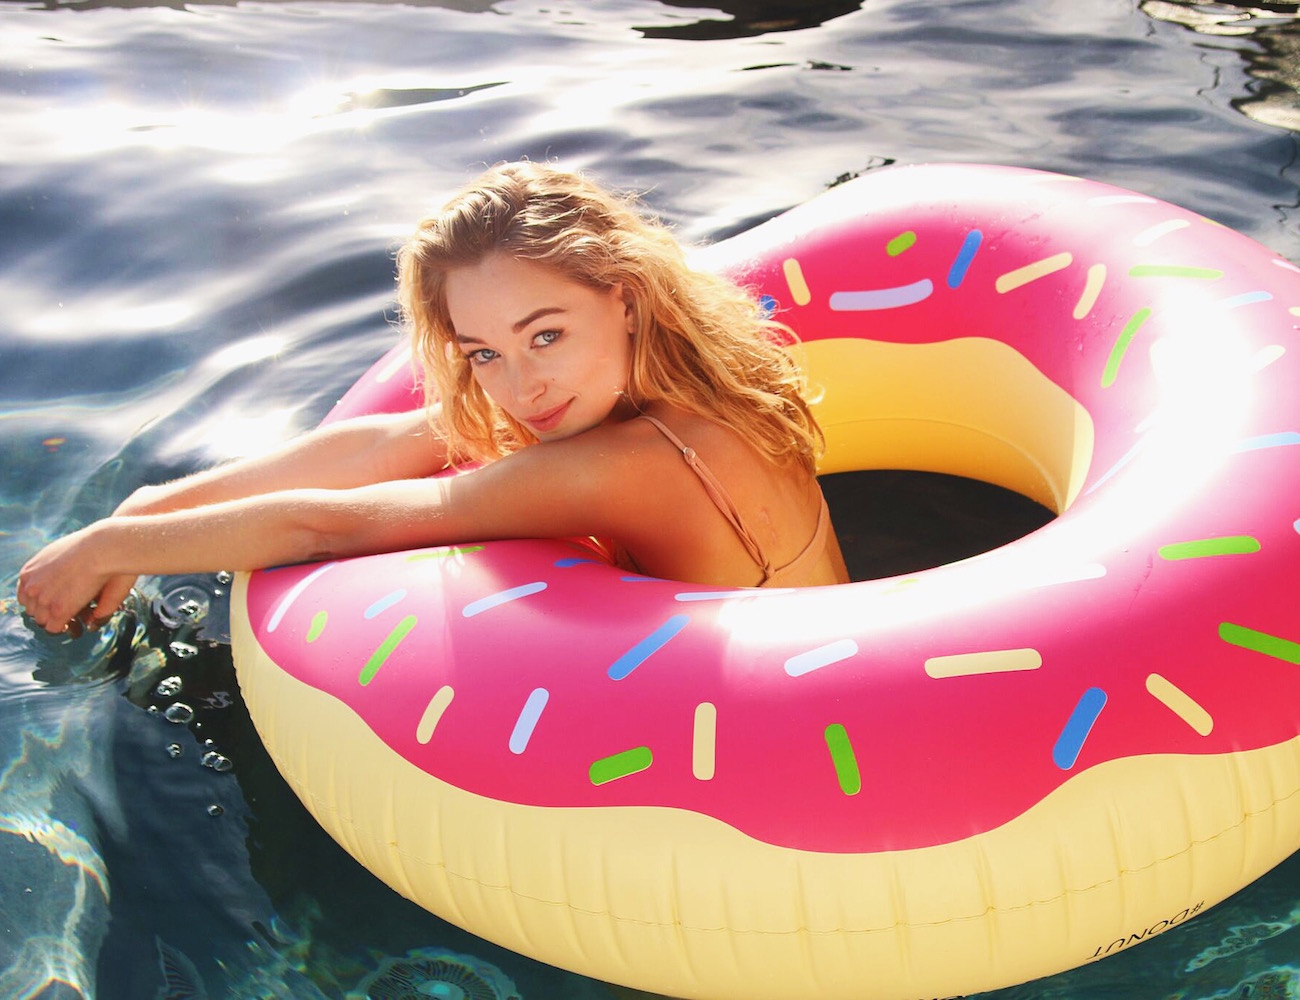 Bouée gonflable Donut Pink, fun, trendy, spécial pool party, bouée pour la piscine et la plage, matériel en PVC environnemental, taille XL, pour une ou deux personnes, couleur Rose, le meilleur des bouées pour l'été!